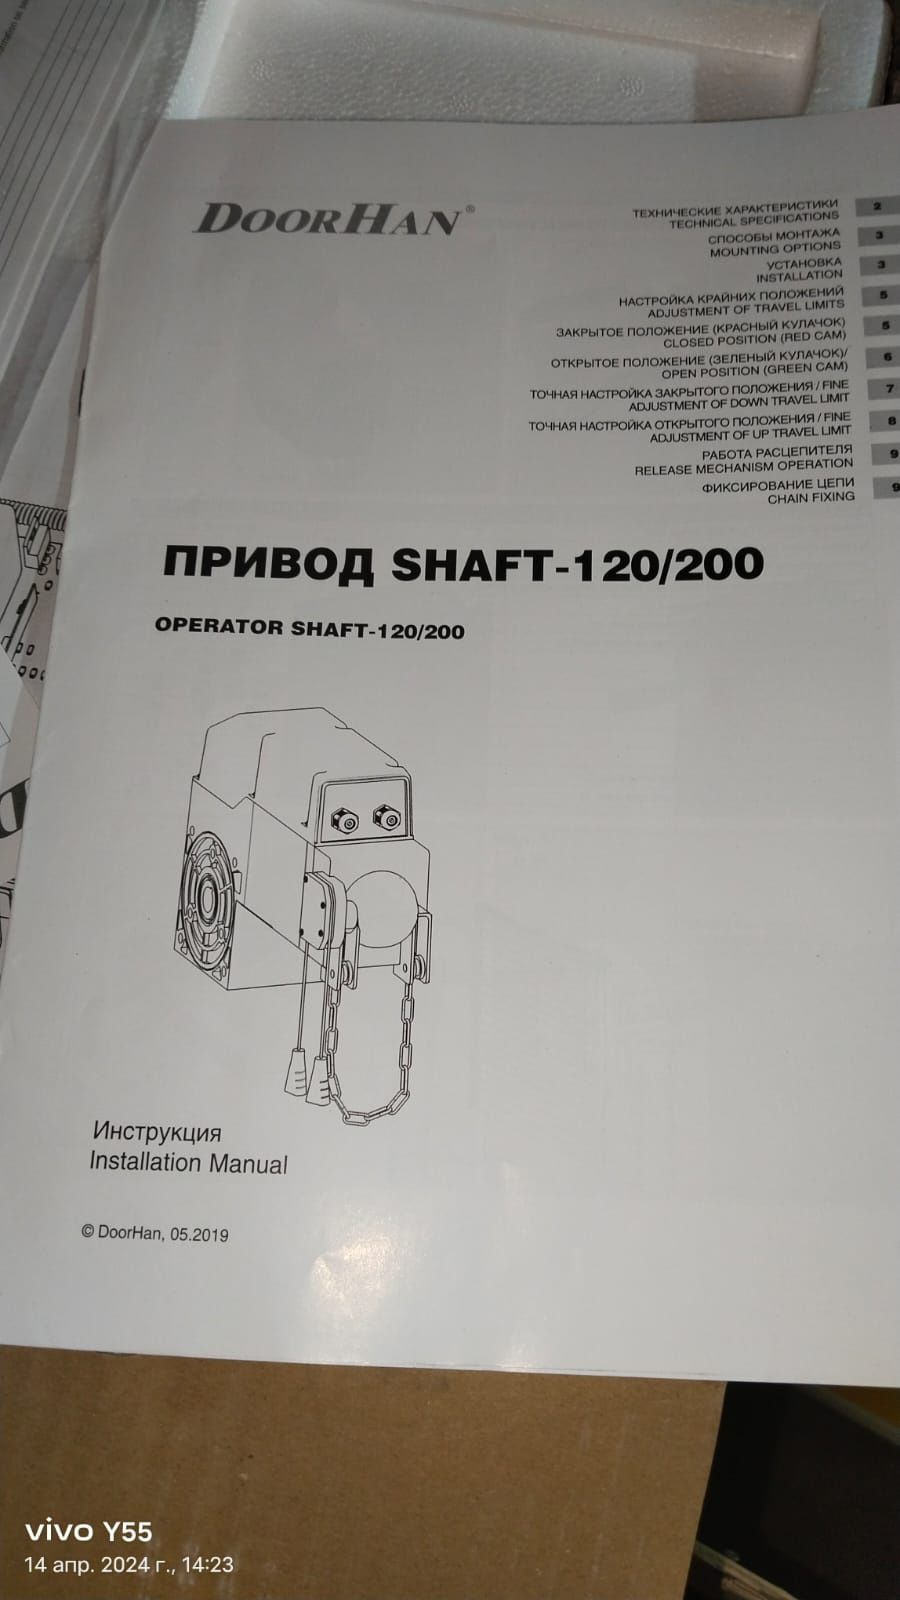 Привод shaft - 120